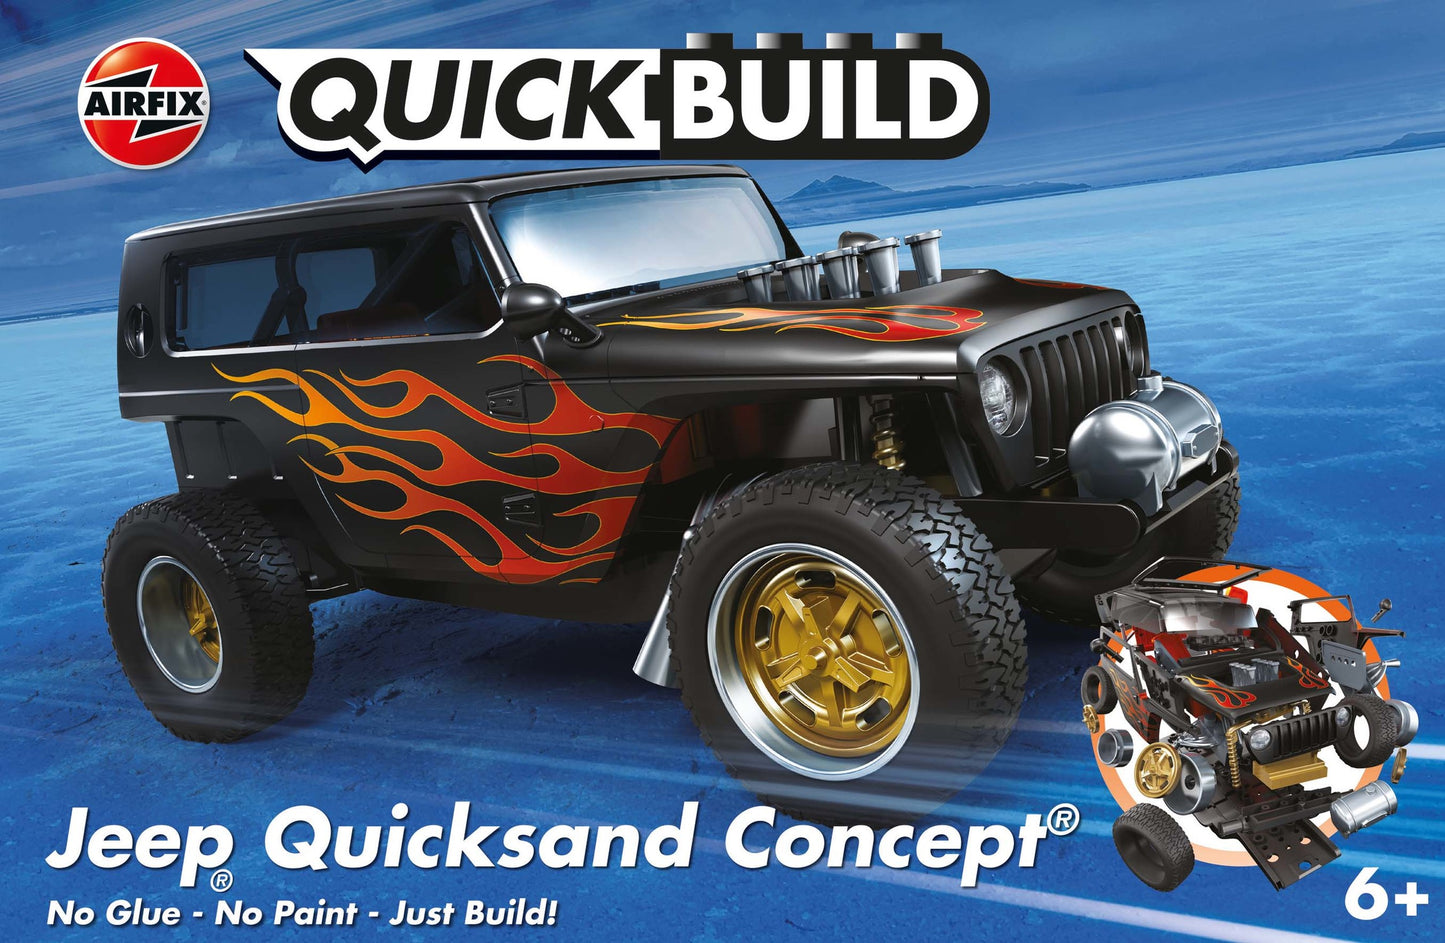 Airfix Quickbuild J6038 - Jeep Quicksand Concept